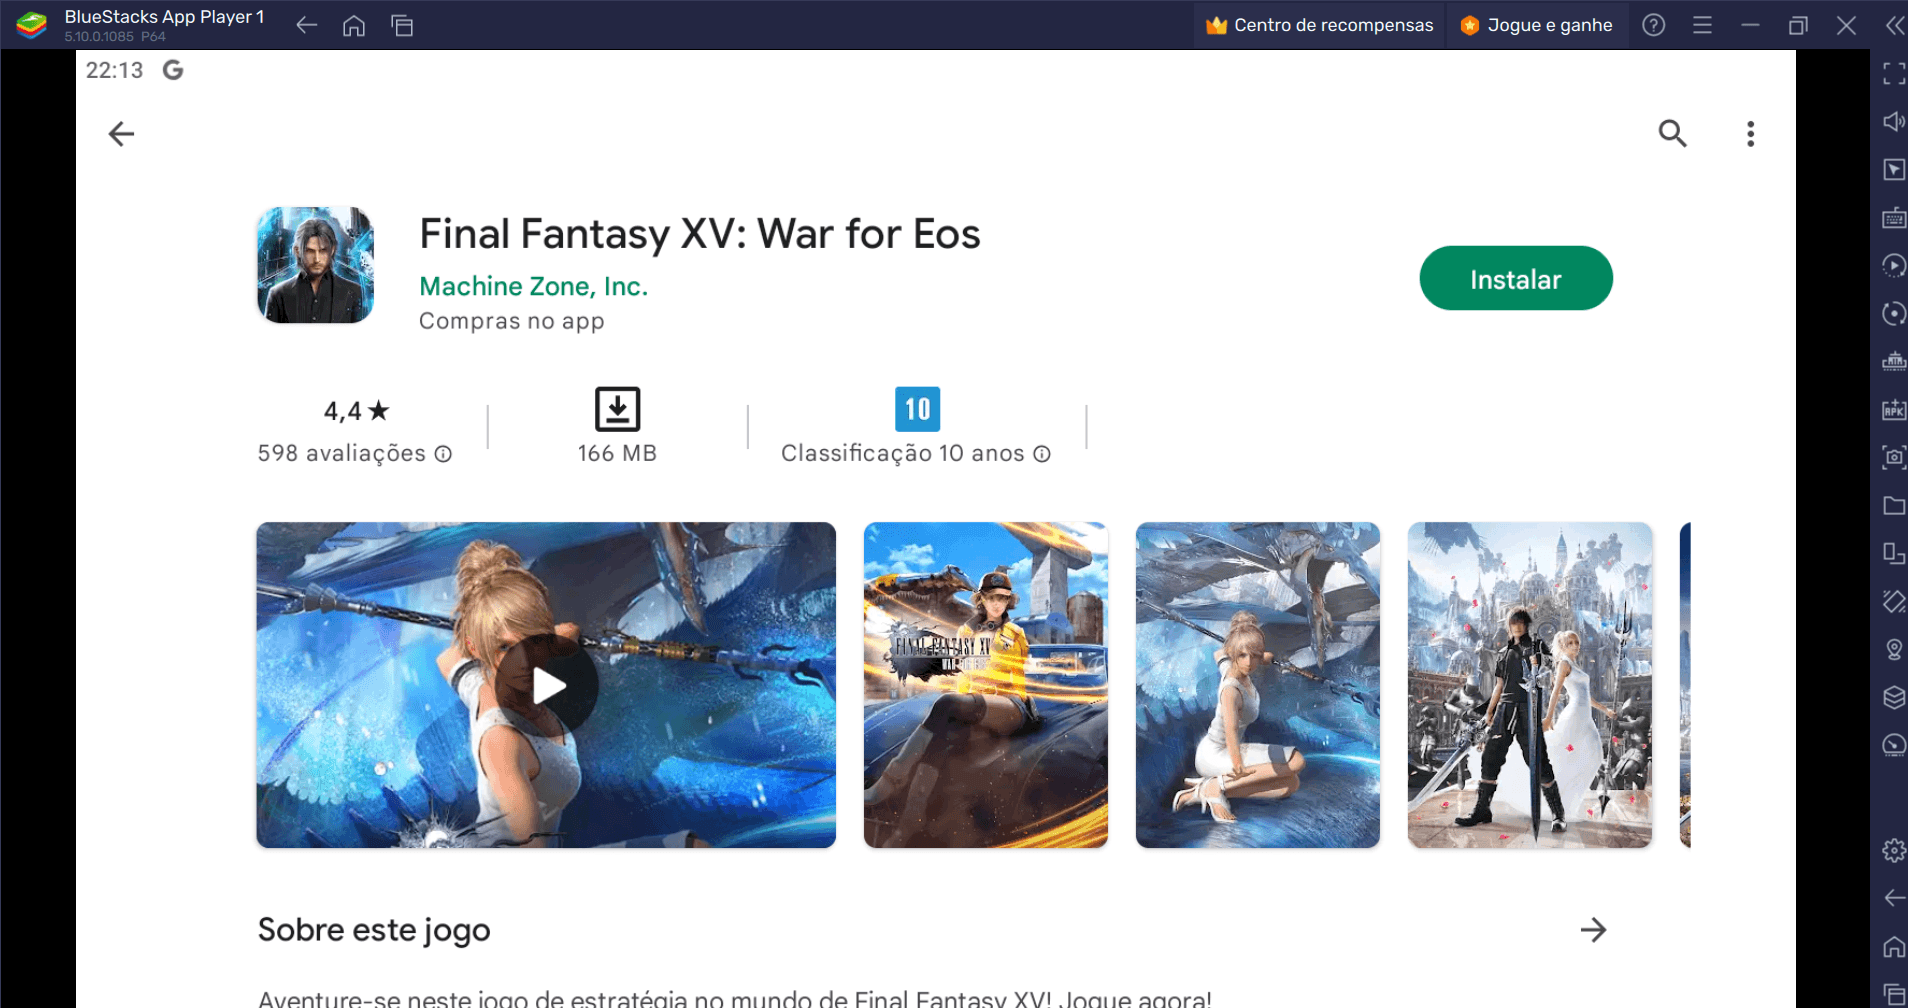 Como jogar Final Fantasy XV: War for Eos no PC com o BlueStacks